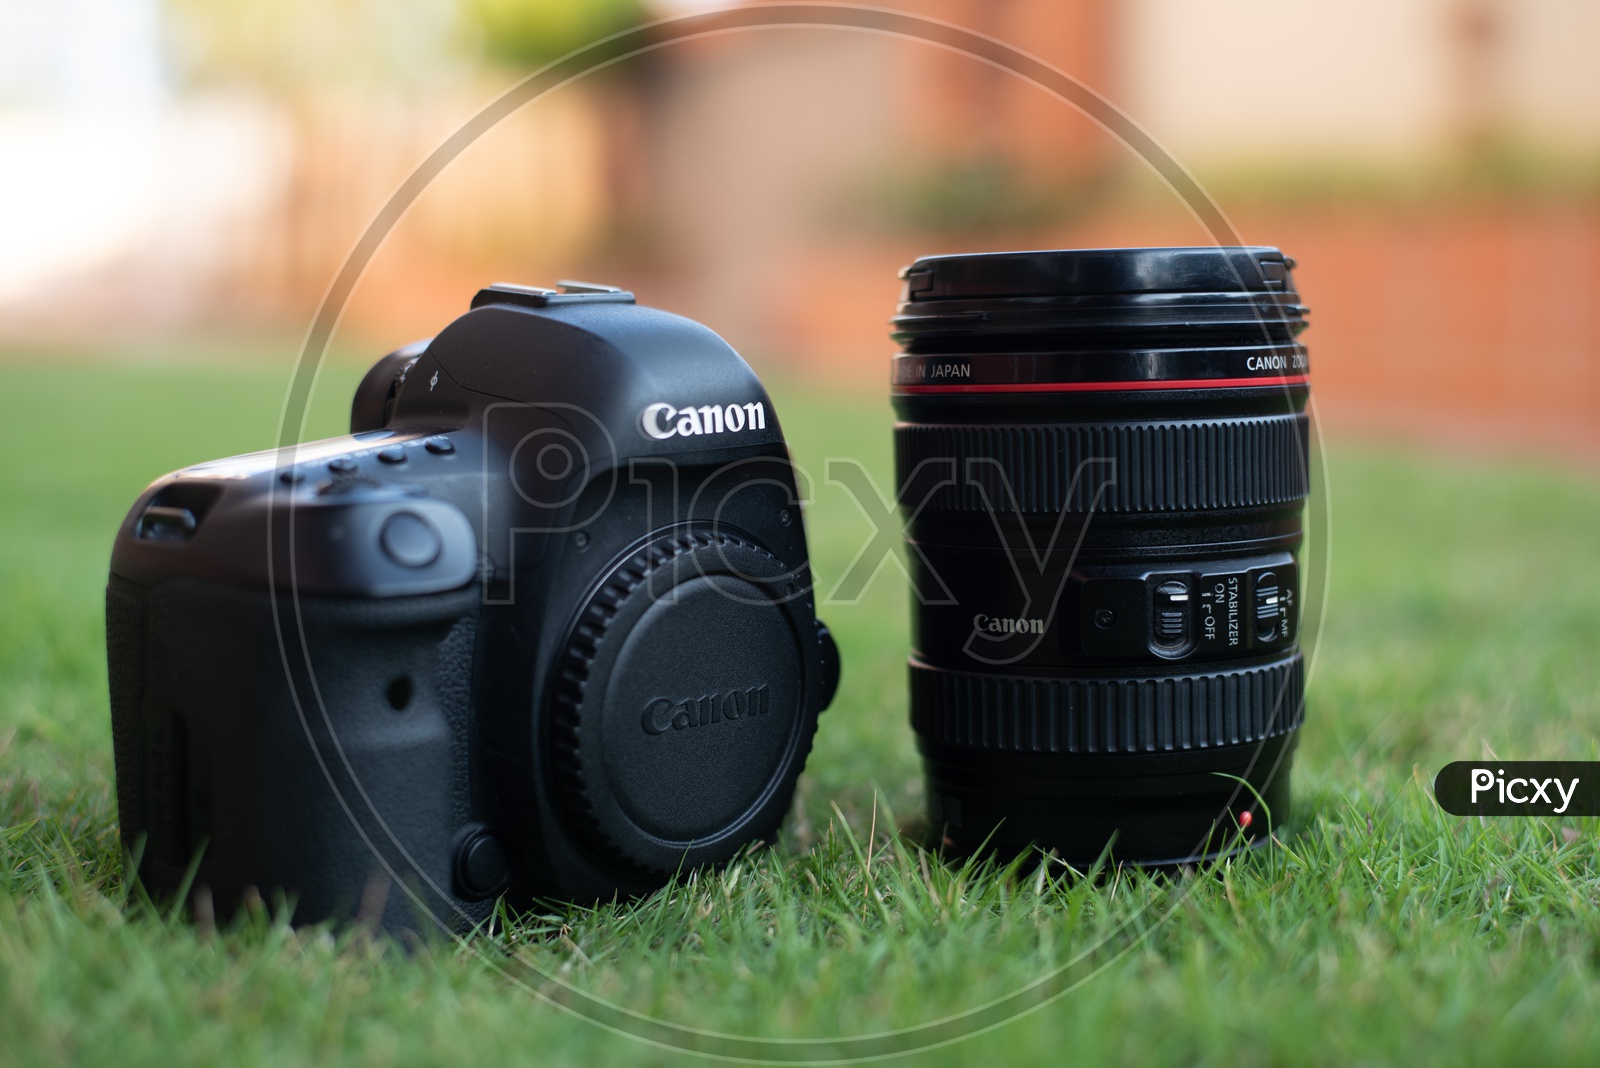 Canon Eos 5D Mark IV   DSLR Camera With Canon  24-104 mm Lens On Lawn Garden Grass Backdrop